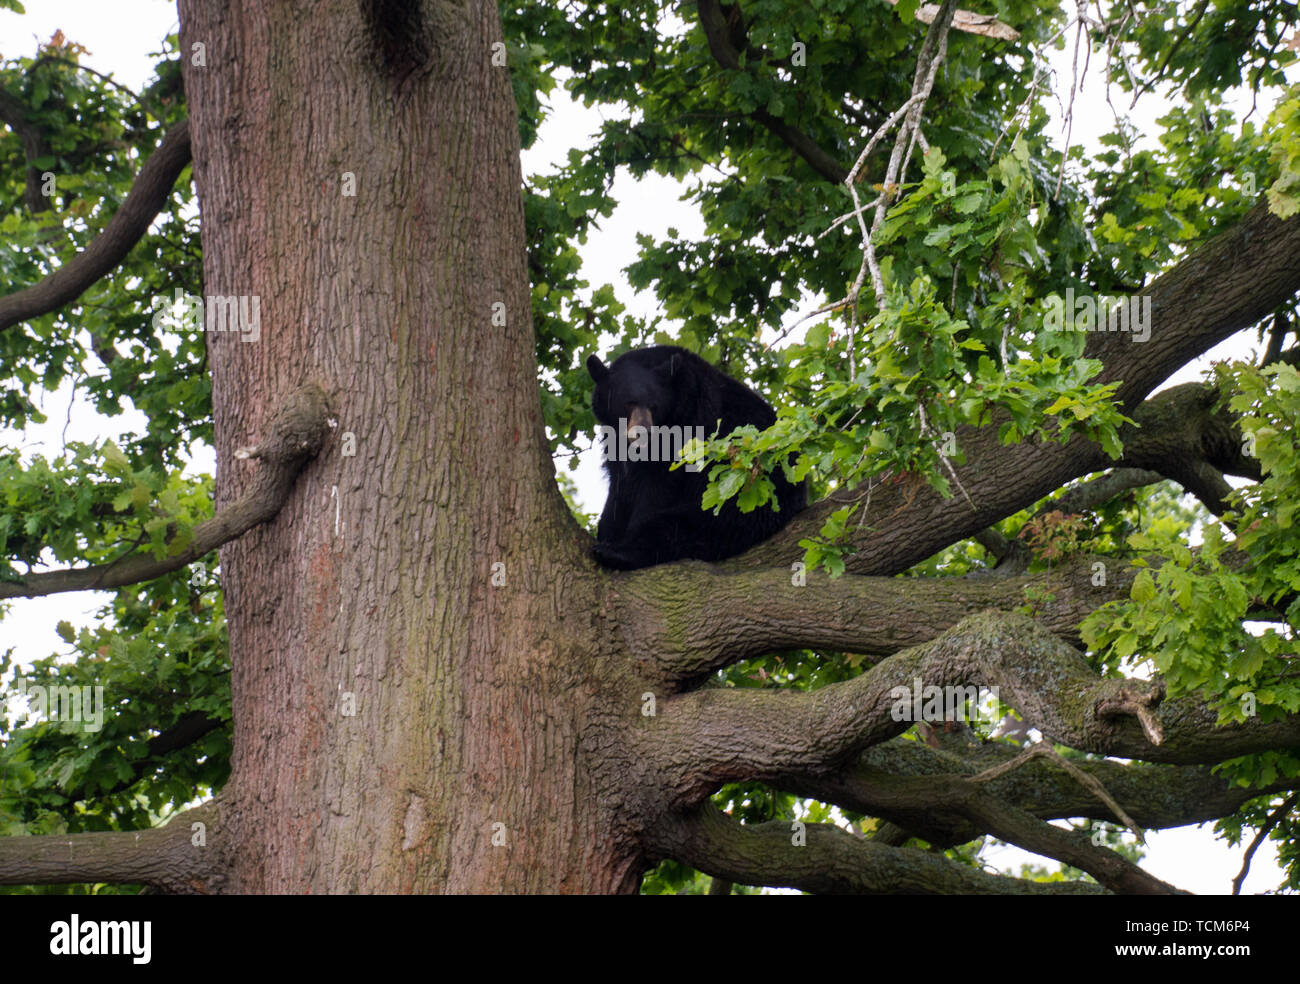 North American Black Bear (Ursidae) at woburn safari park Stock Photo